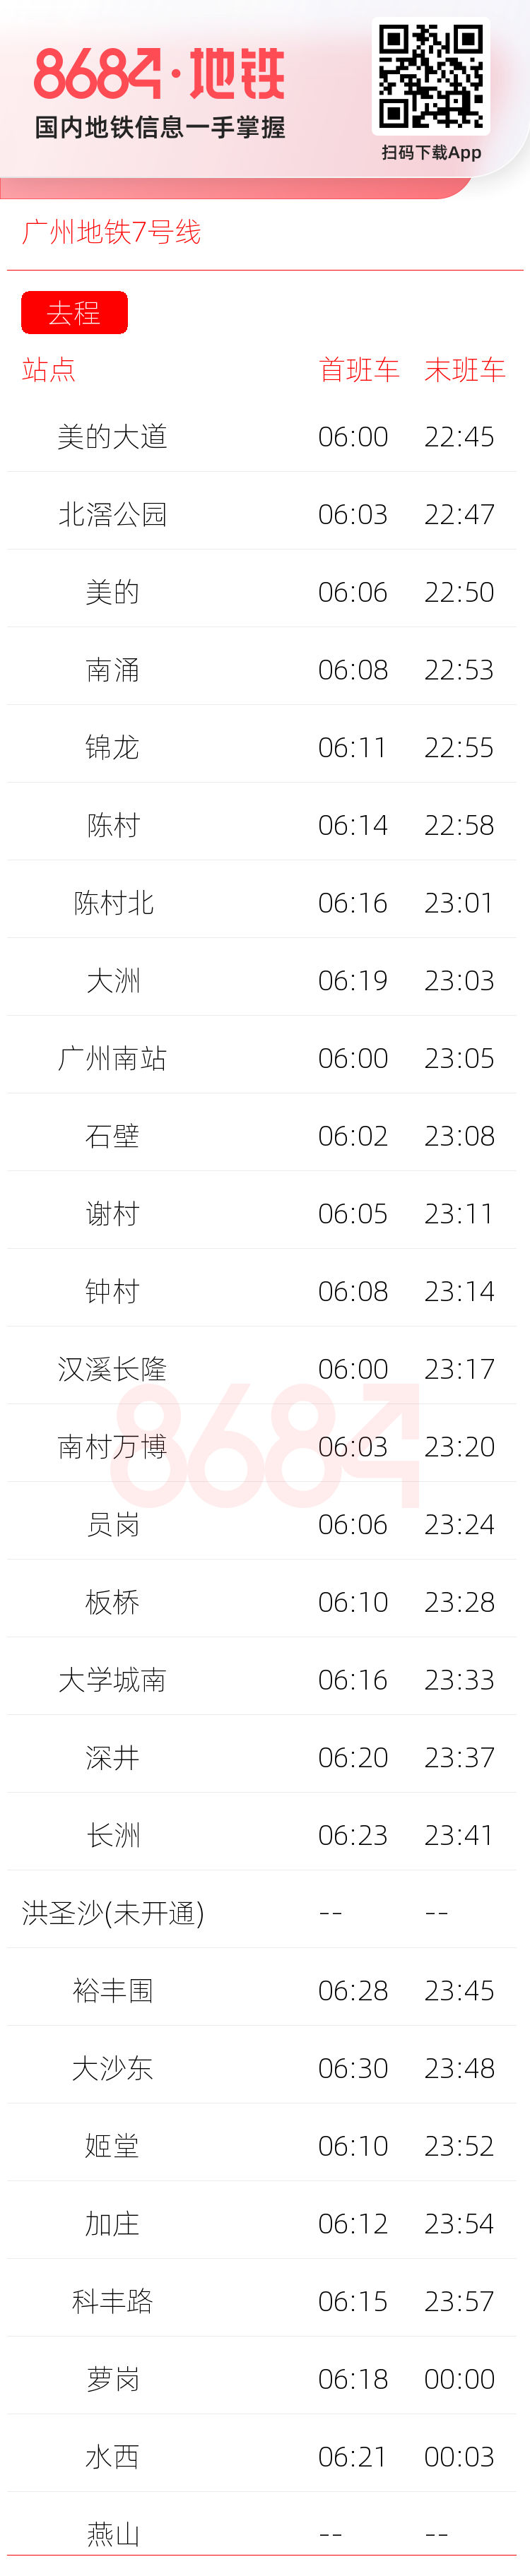 广州地铁7号线运营时间表